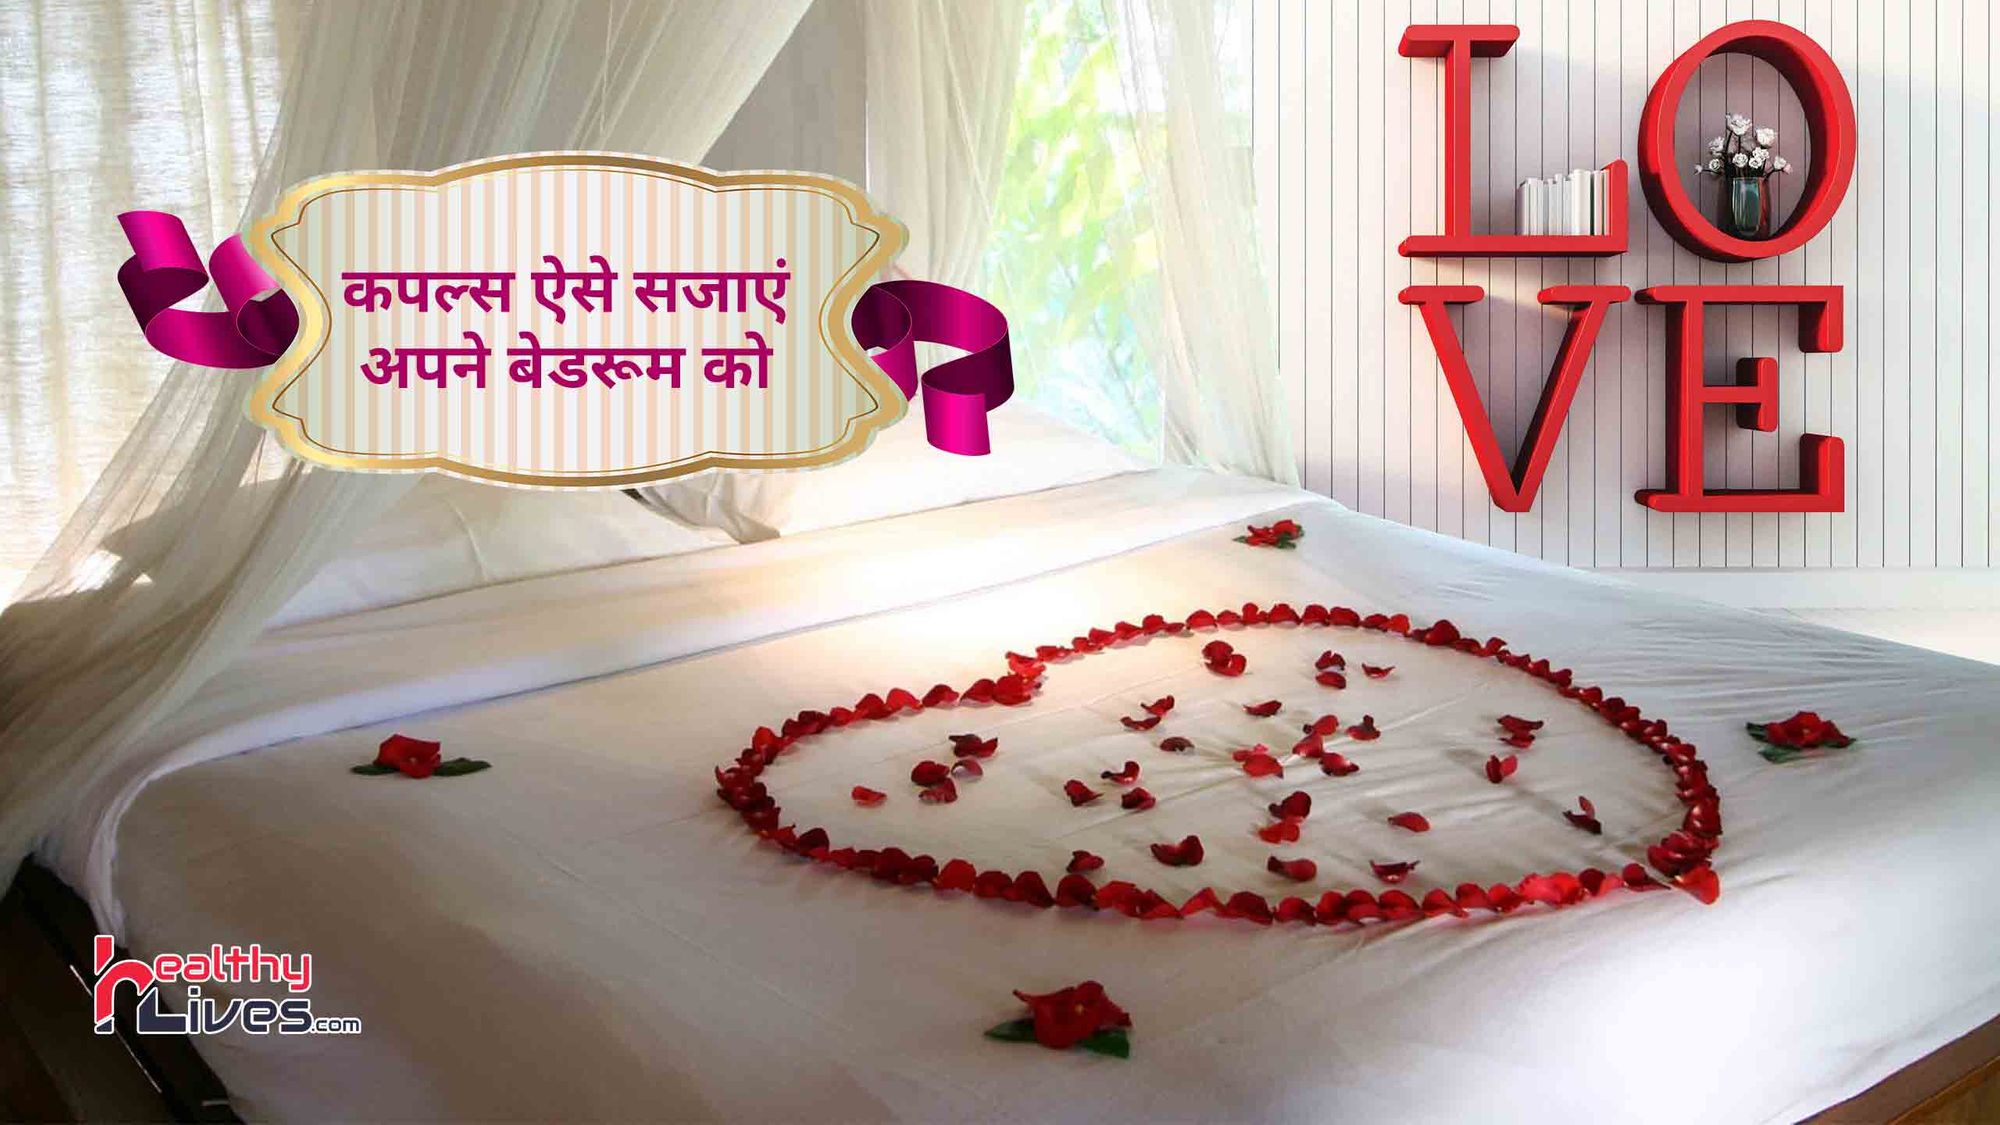 Bedroom Ideas For Couples: बेडरूम को रखें सजा कर, इससे बढ़ेगा आपके बीच का प्यार